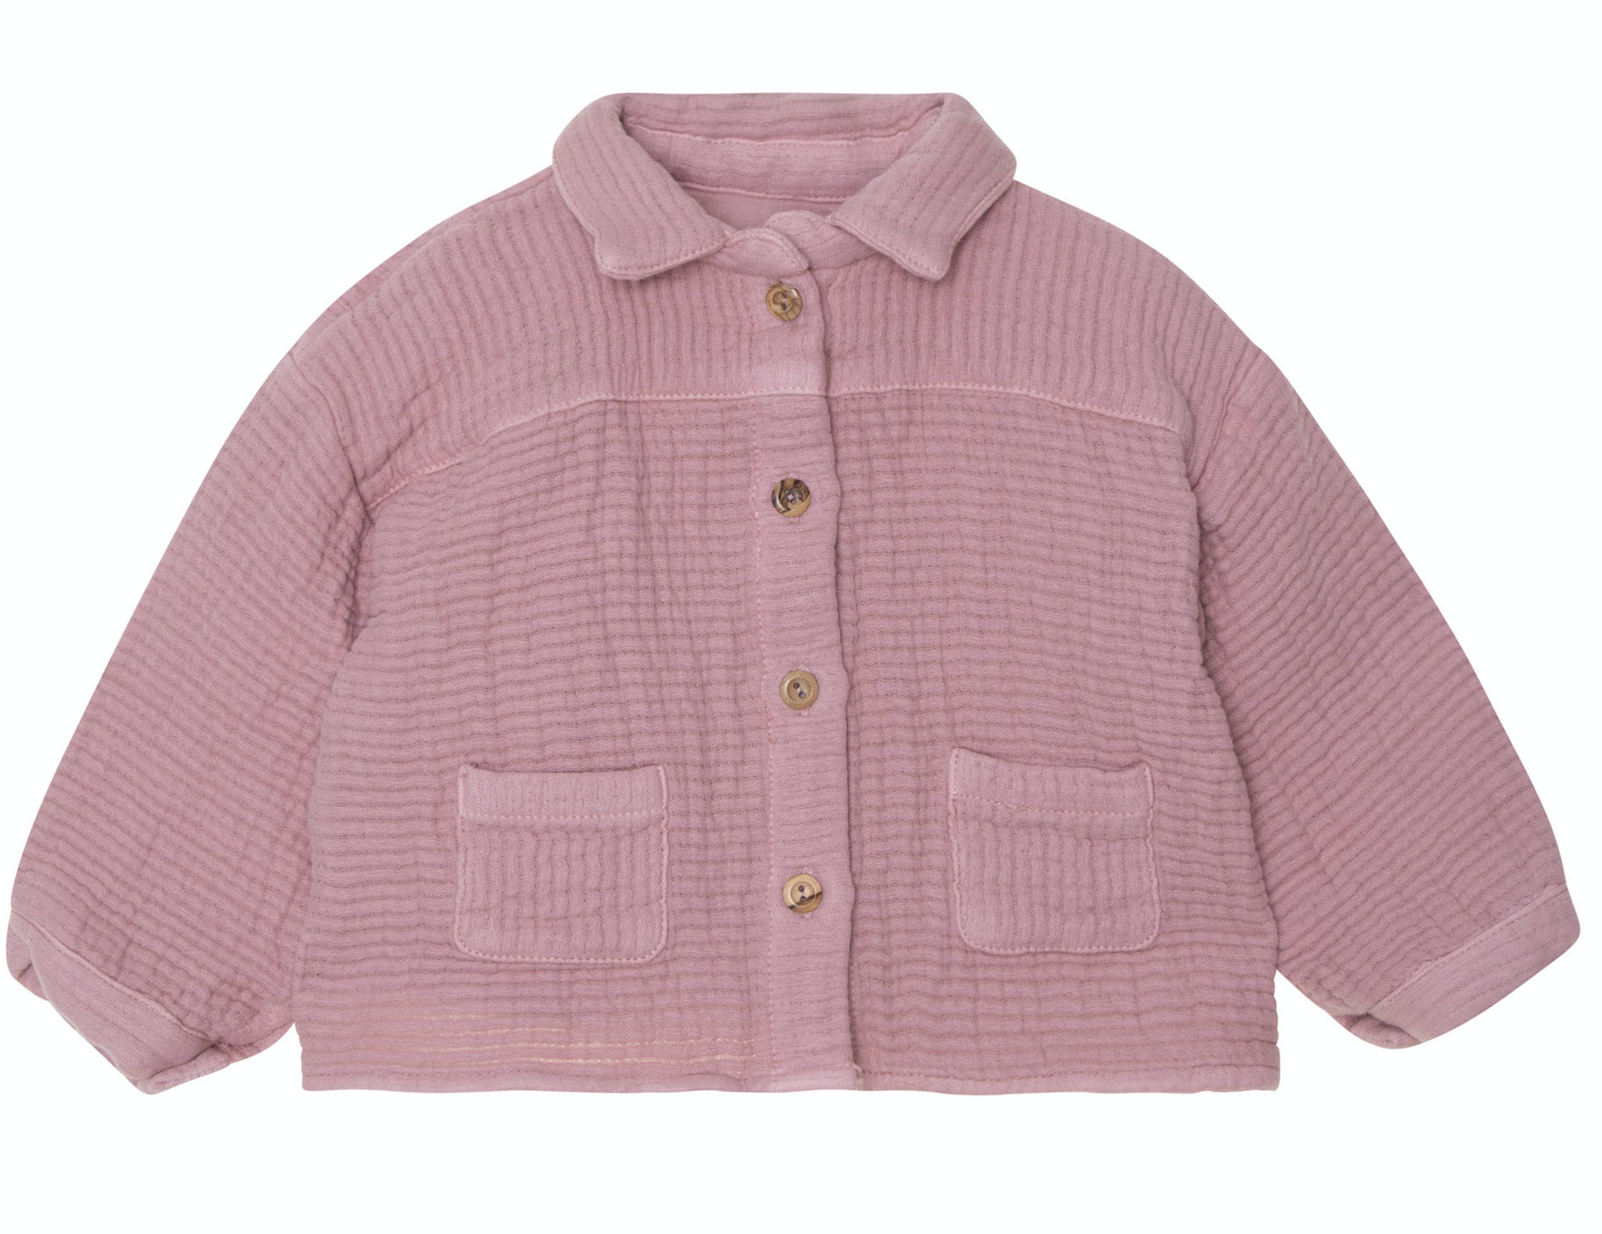                                                                                                                       Soft shirt pink 